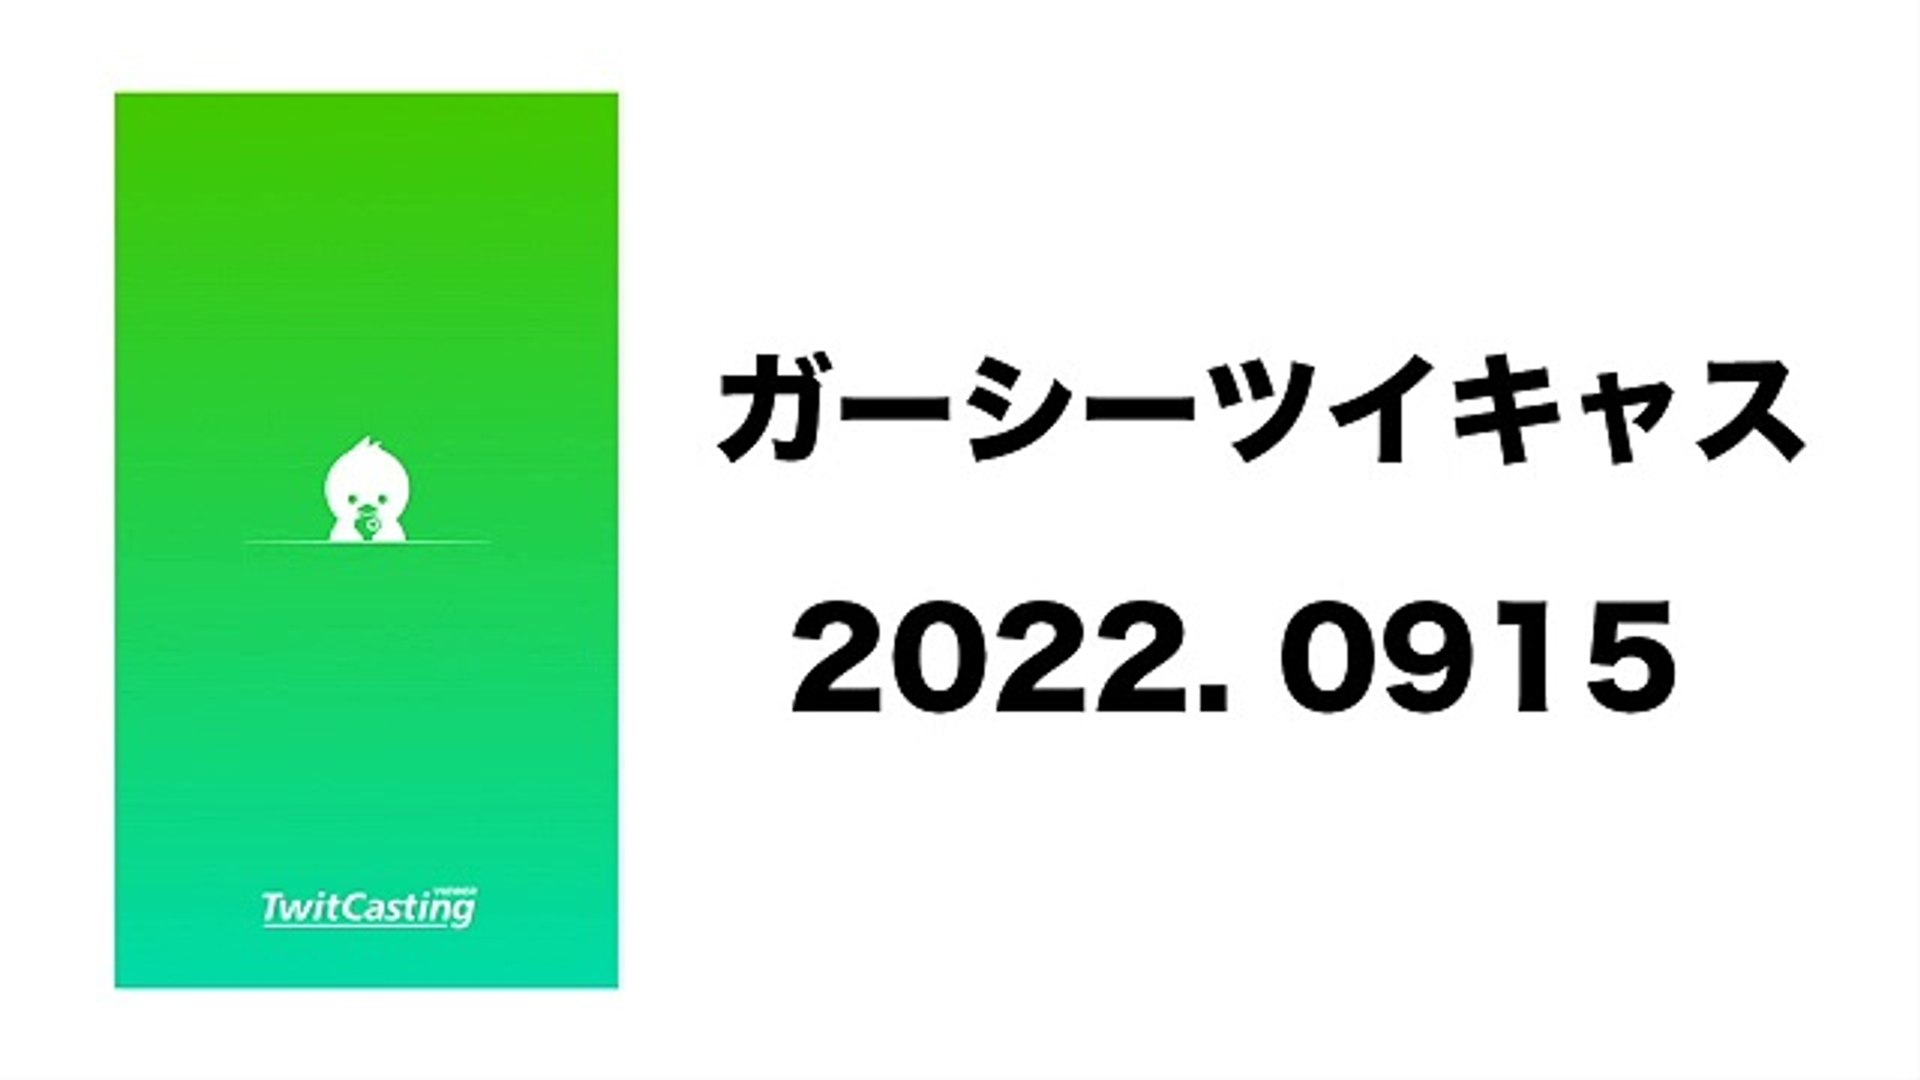 ⁣2022 0915 ガーシーツイキャス　ガーシー散歩ラジオ